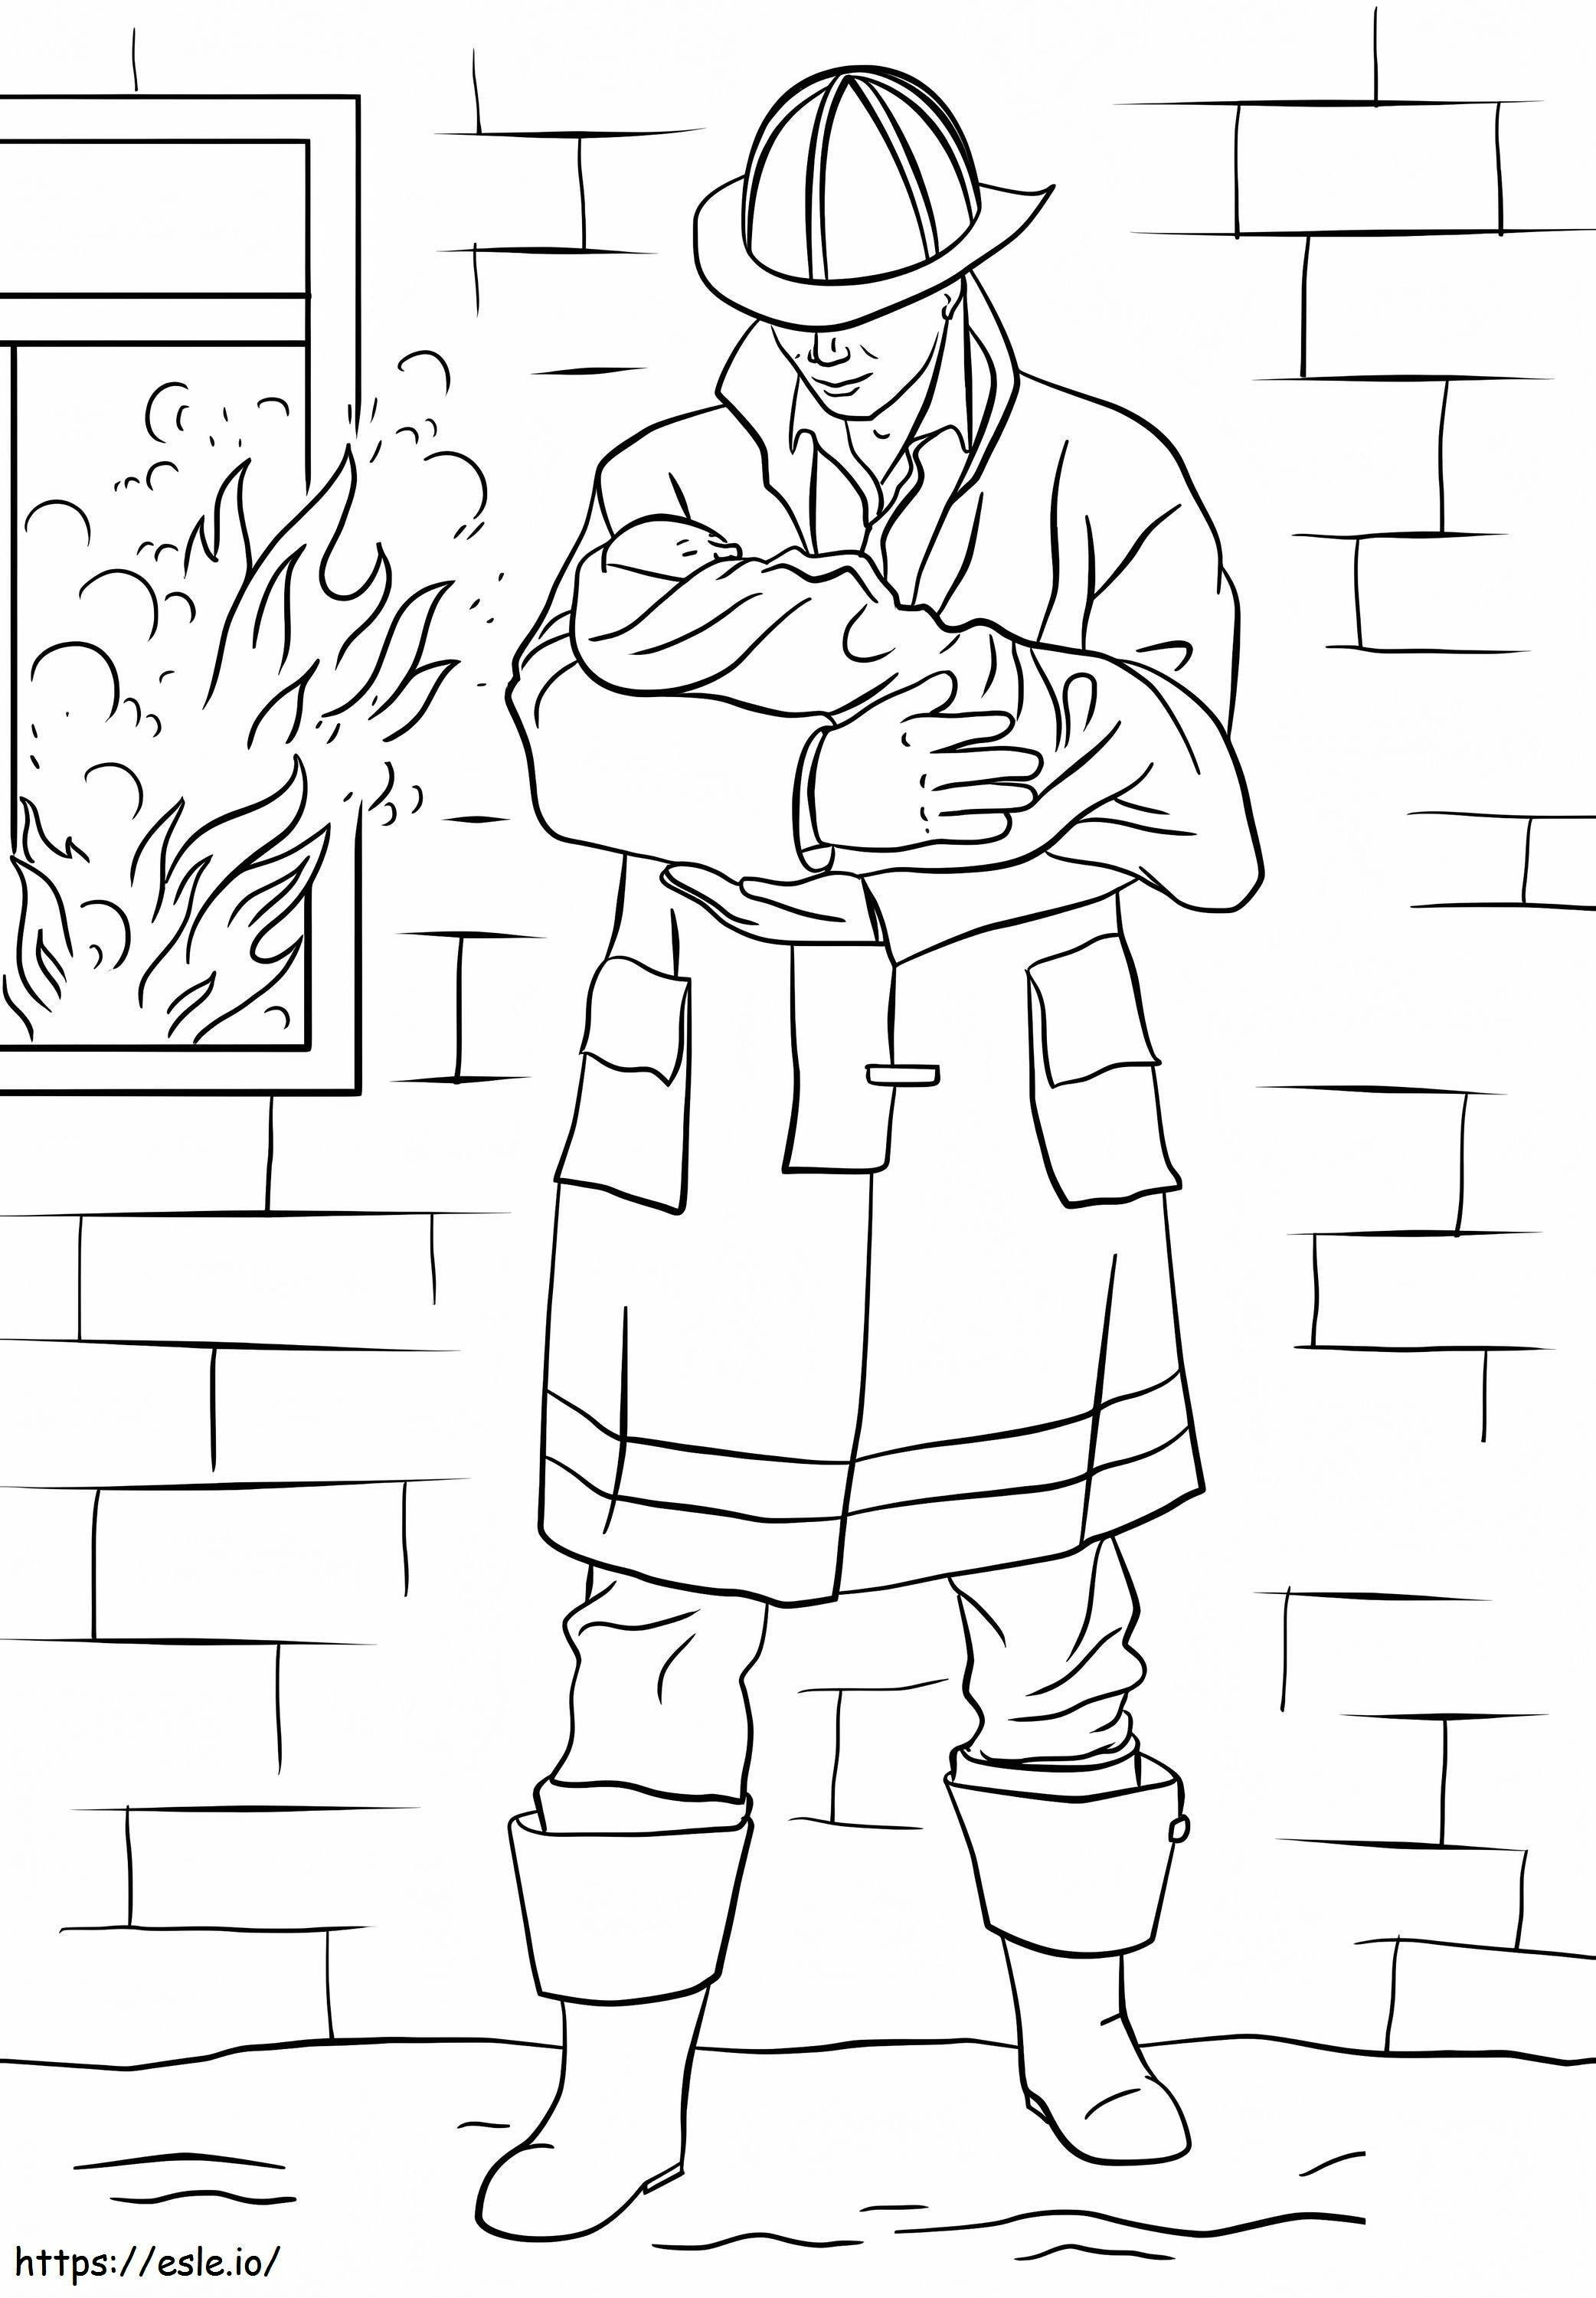 Feuerwehrmann rettet Baby ausmalbilder